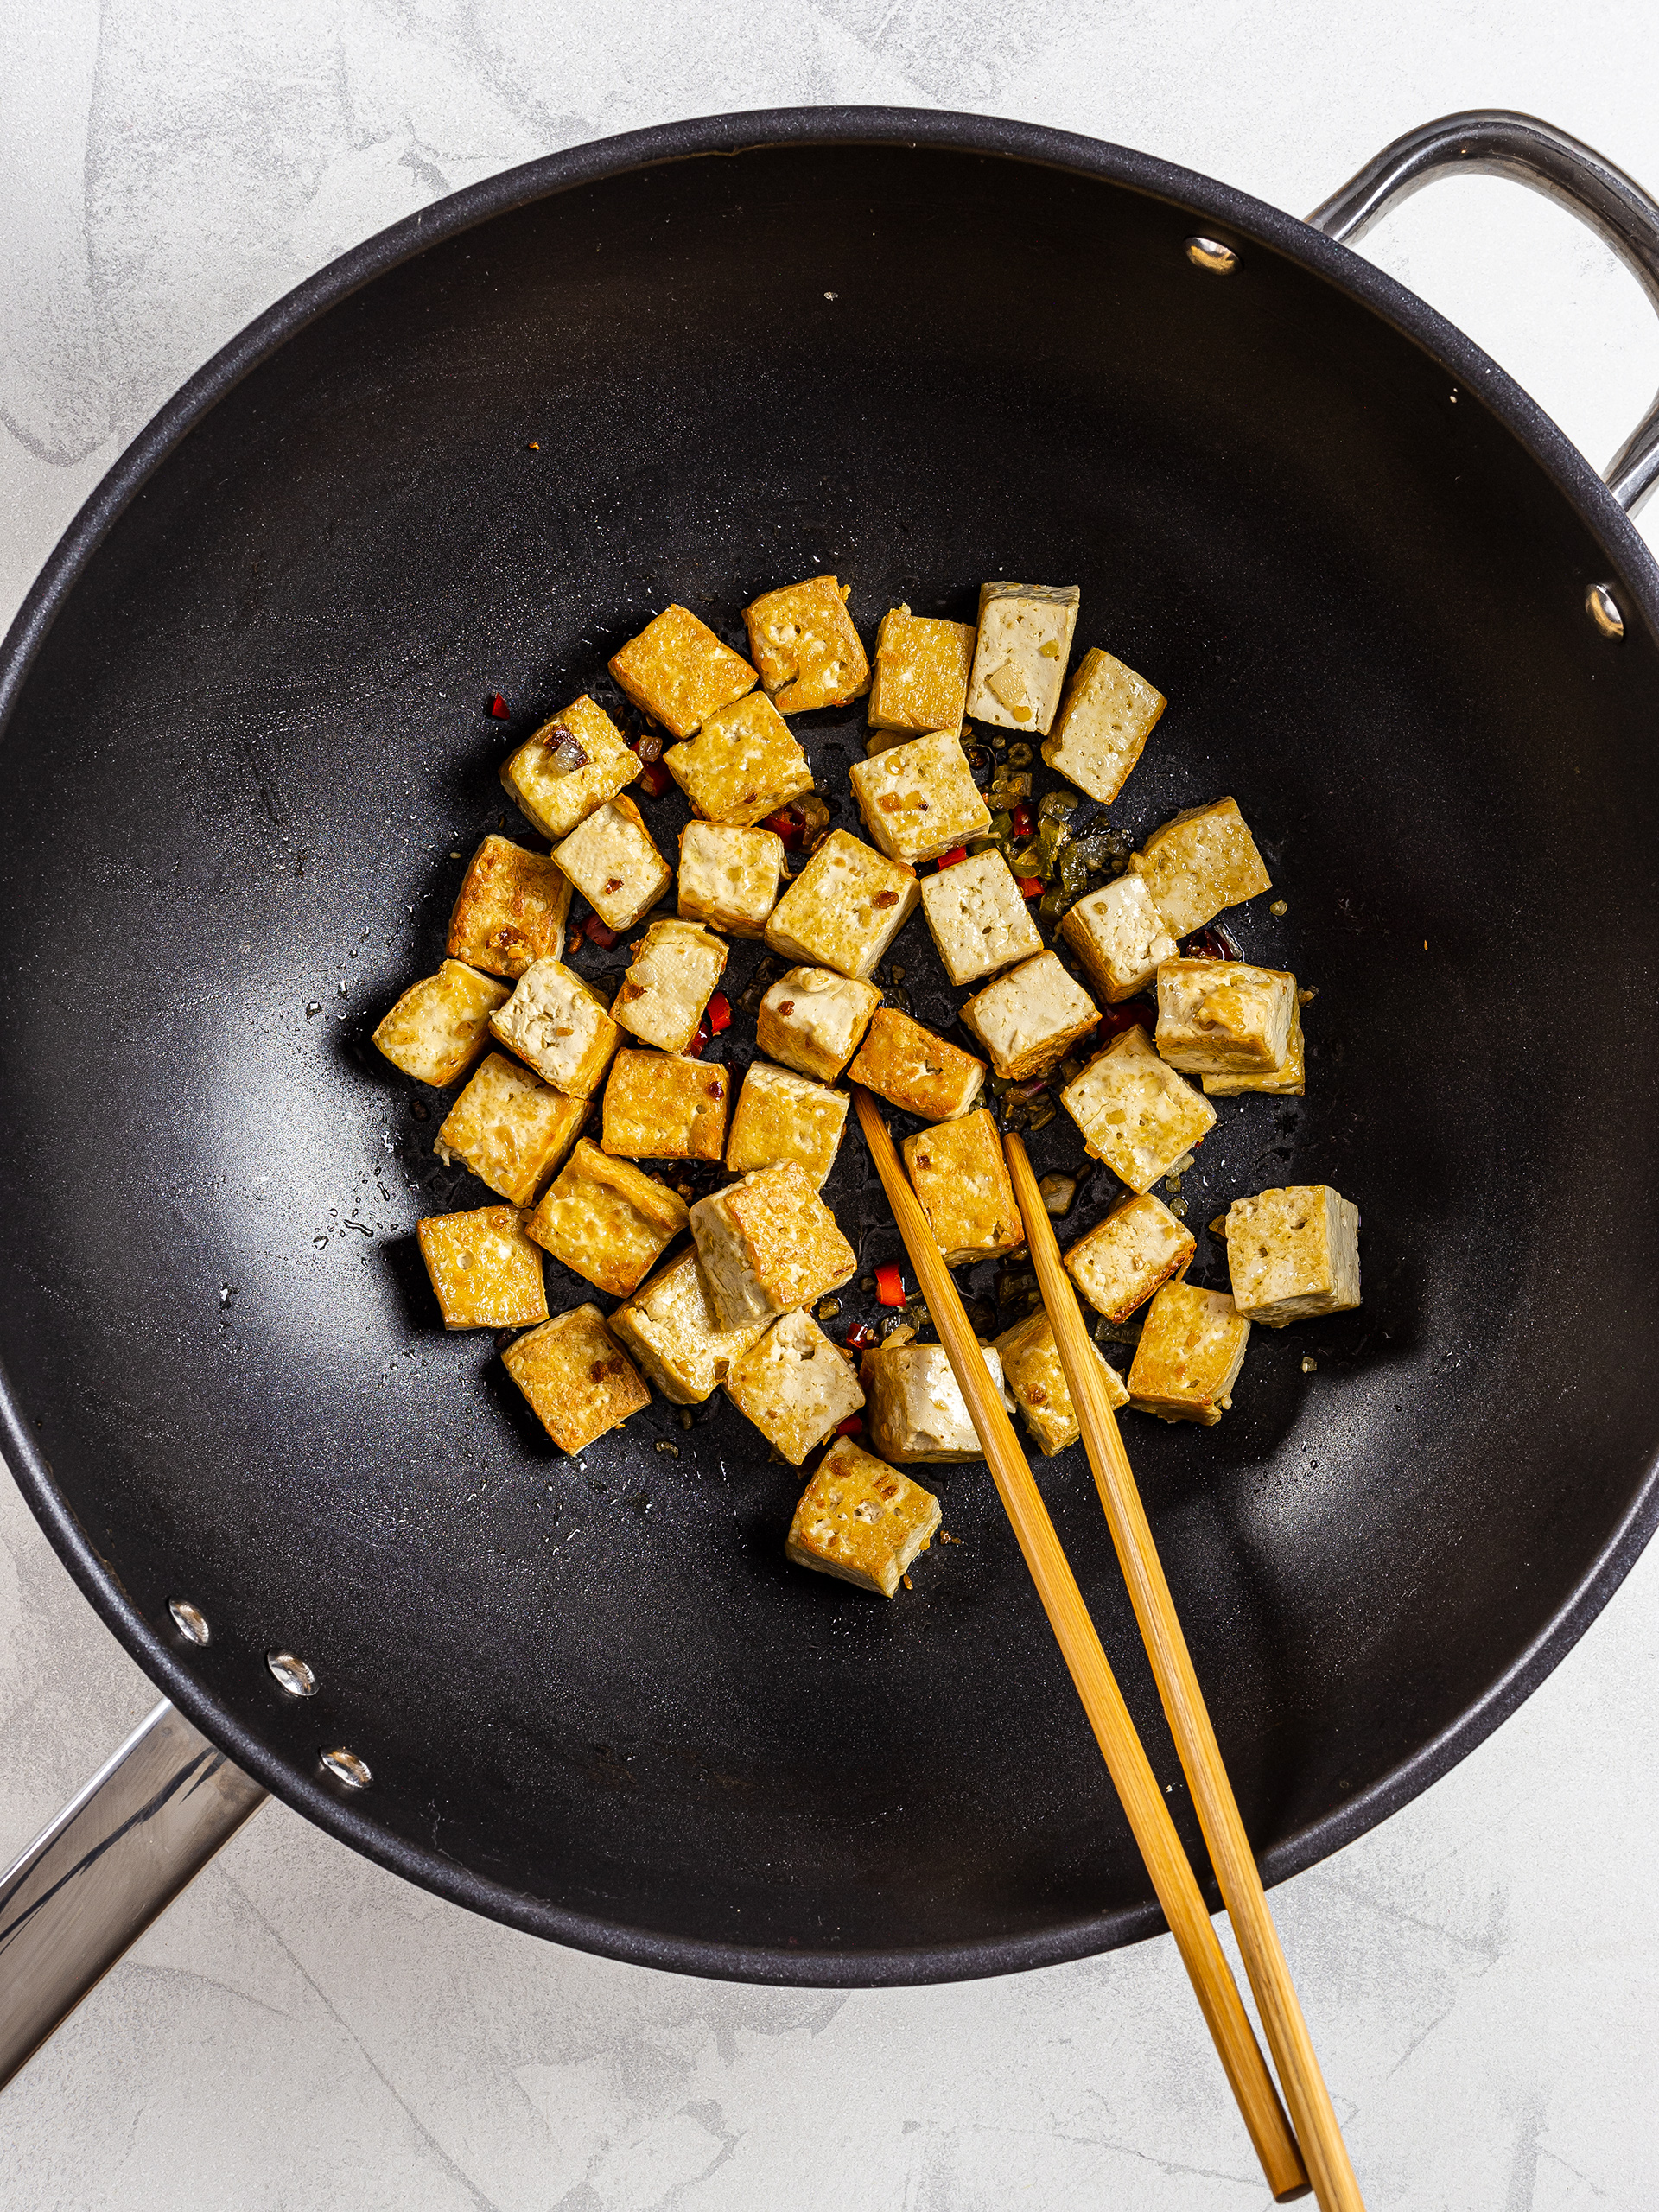 Seared tofu cubes in a wok